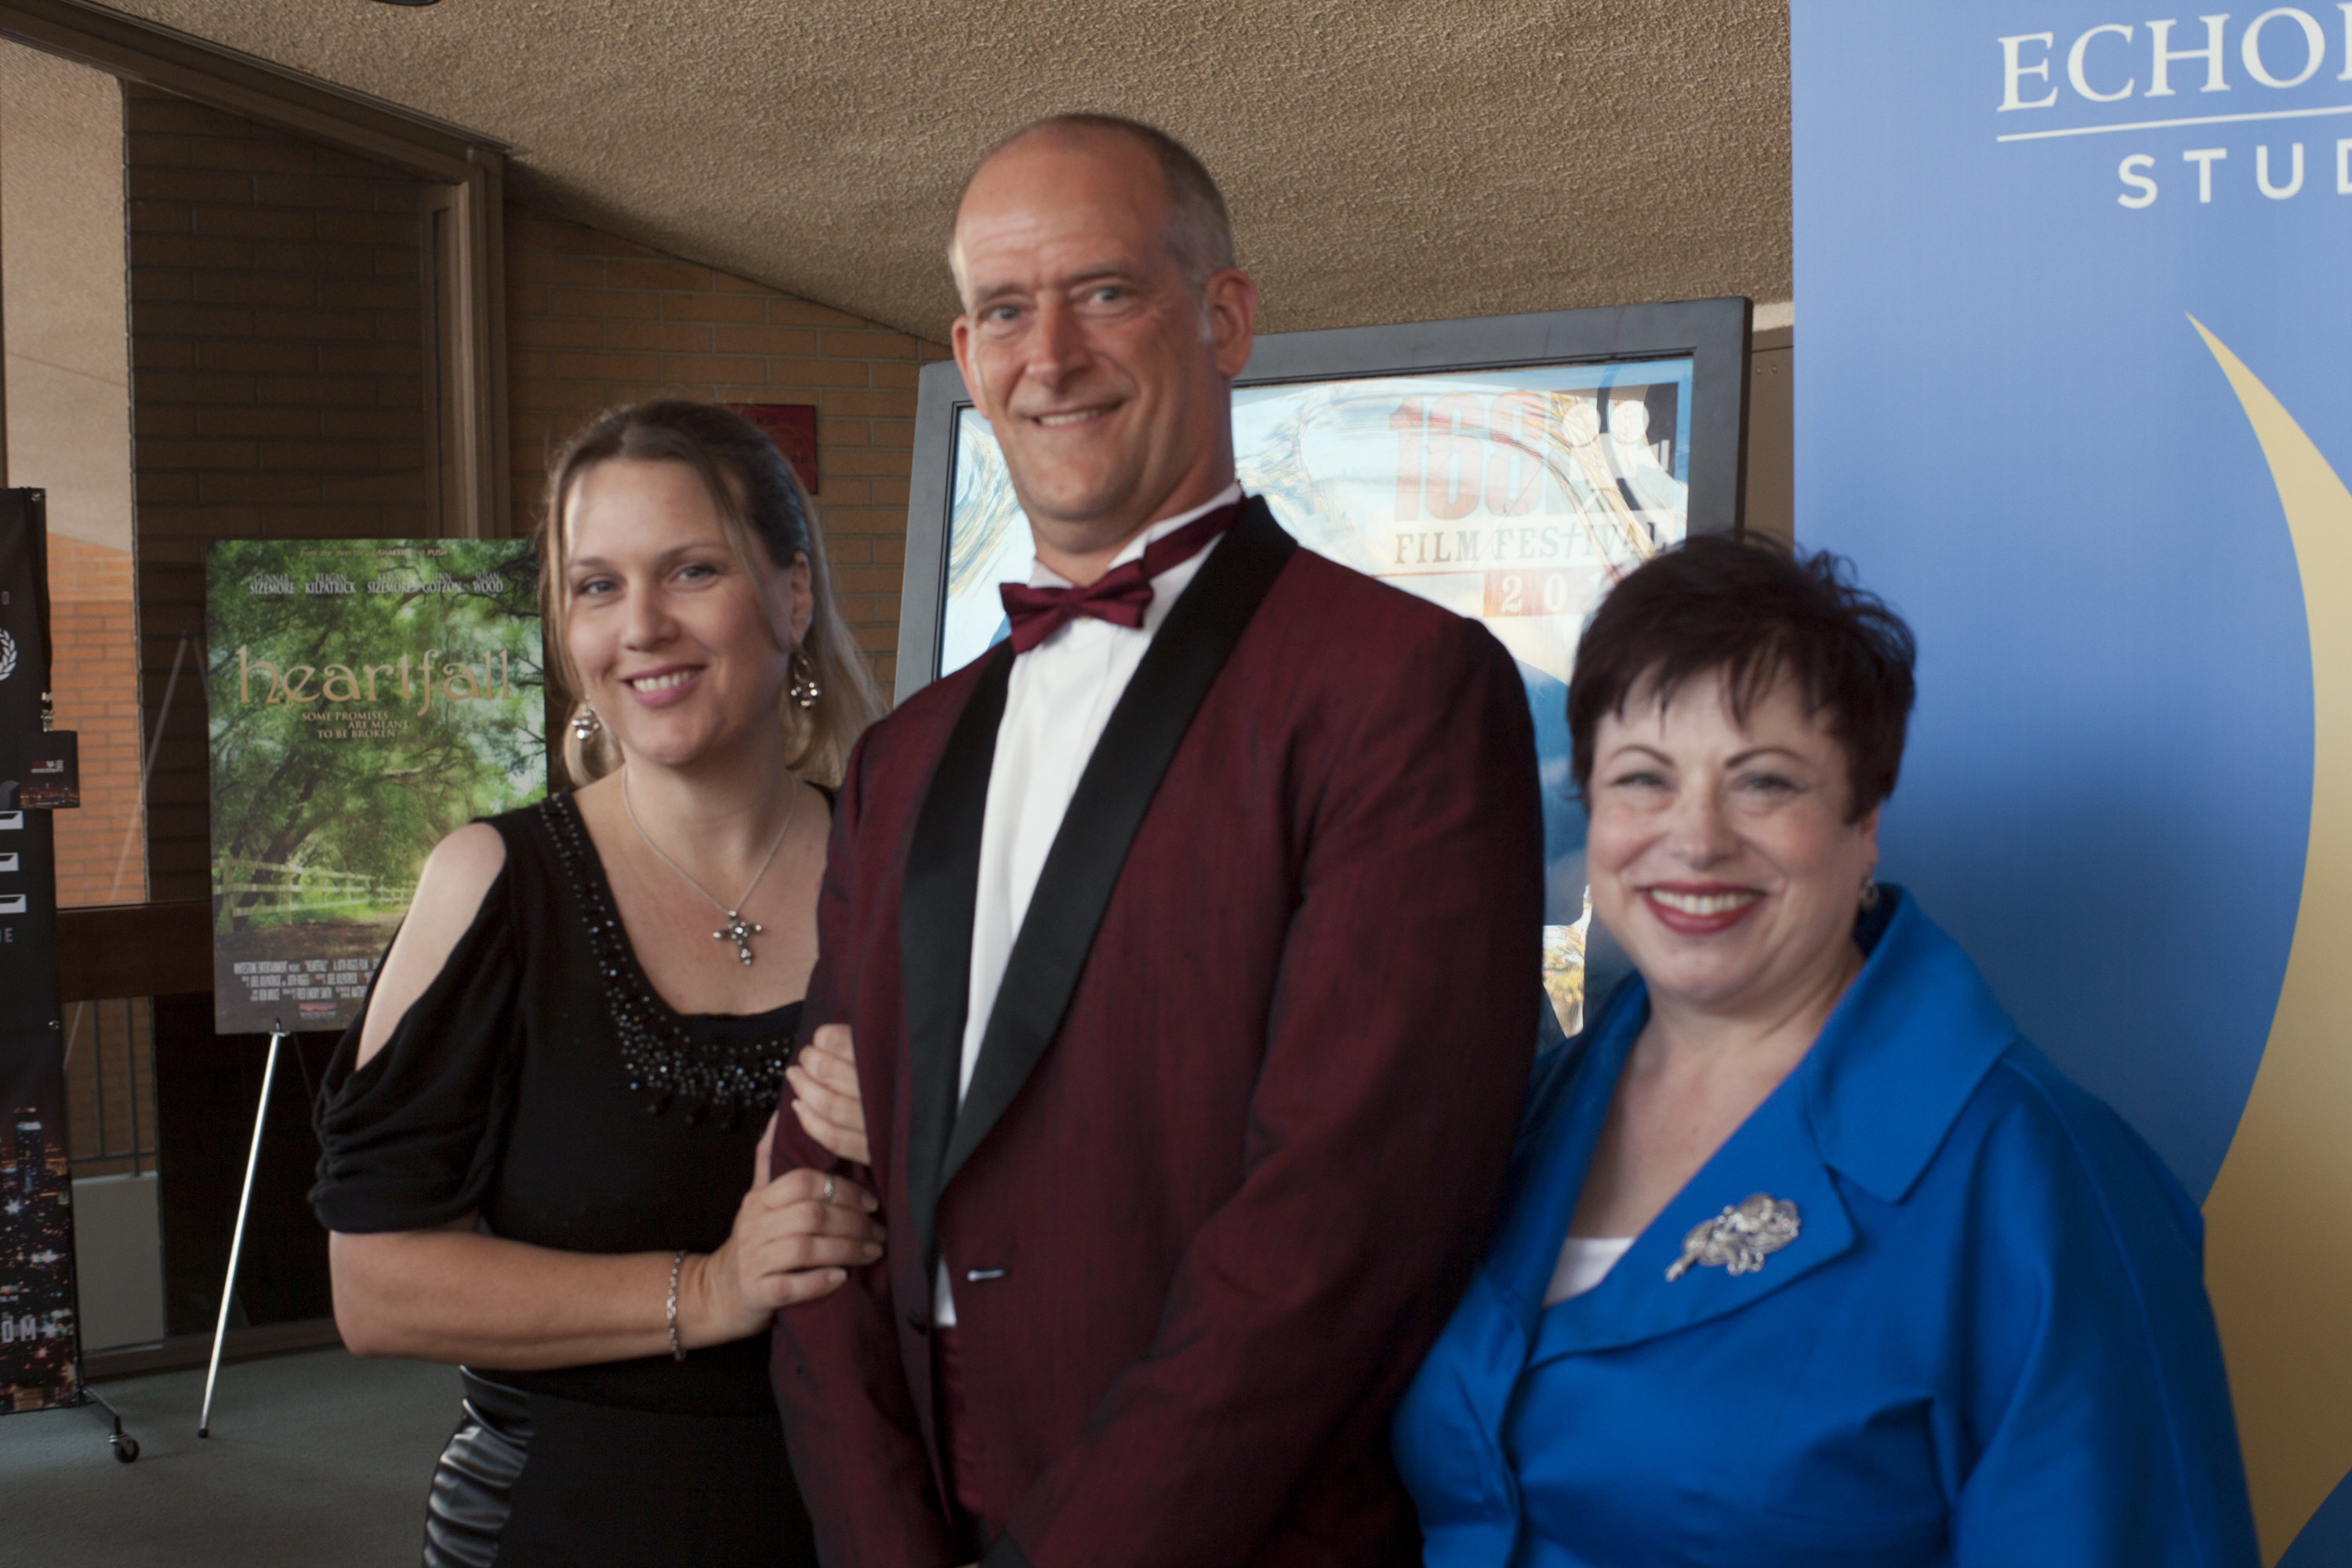 Beth Vickers, Joseph Steven, Claudia DiMartino at the 2013 168 Film Festival, Glendale, CA.